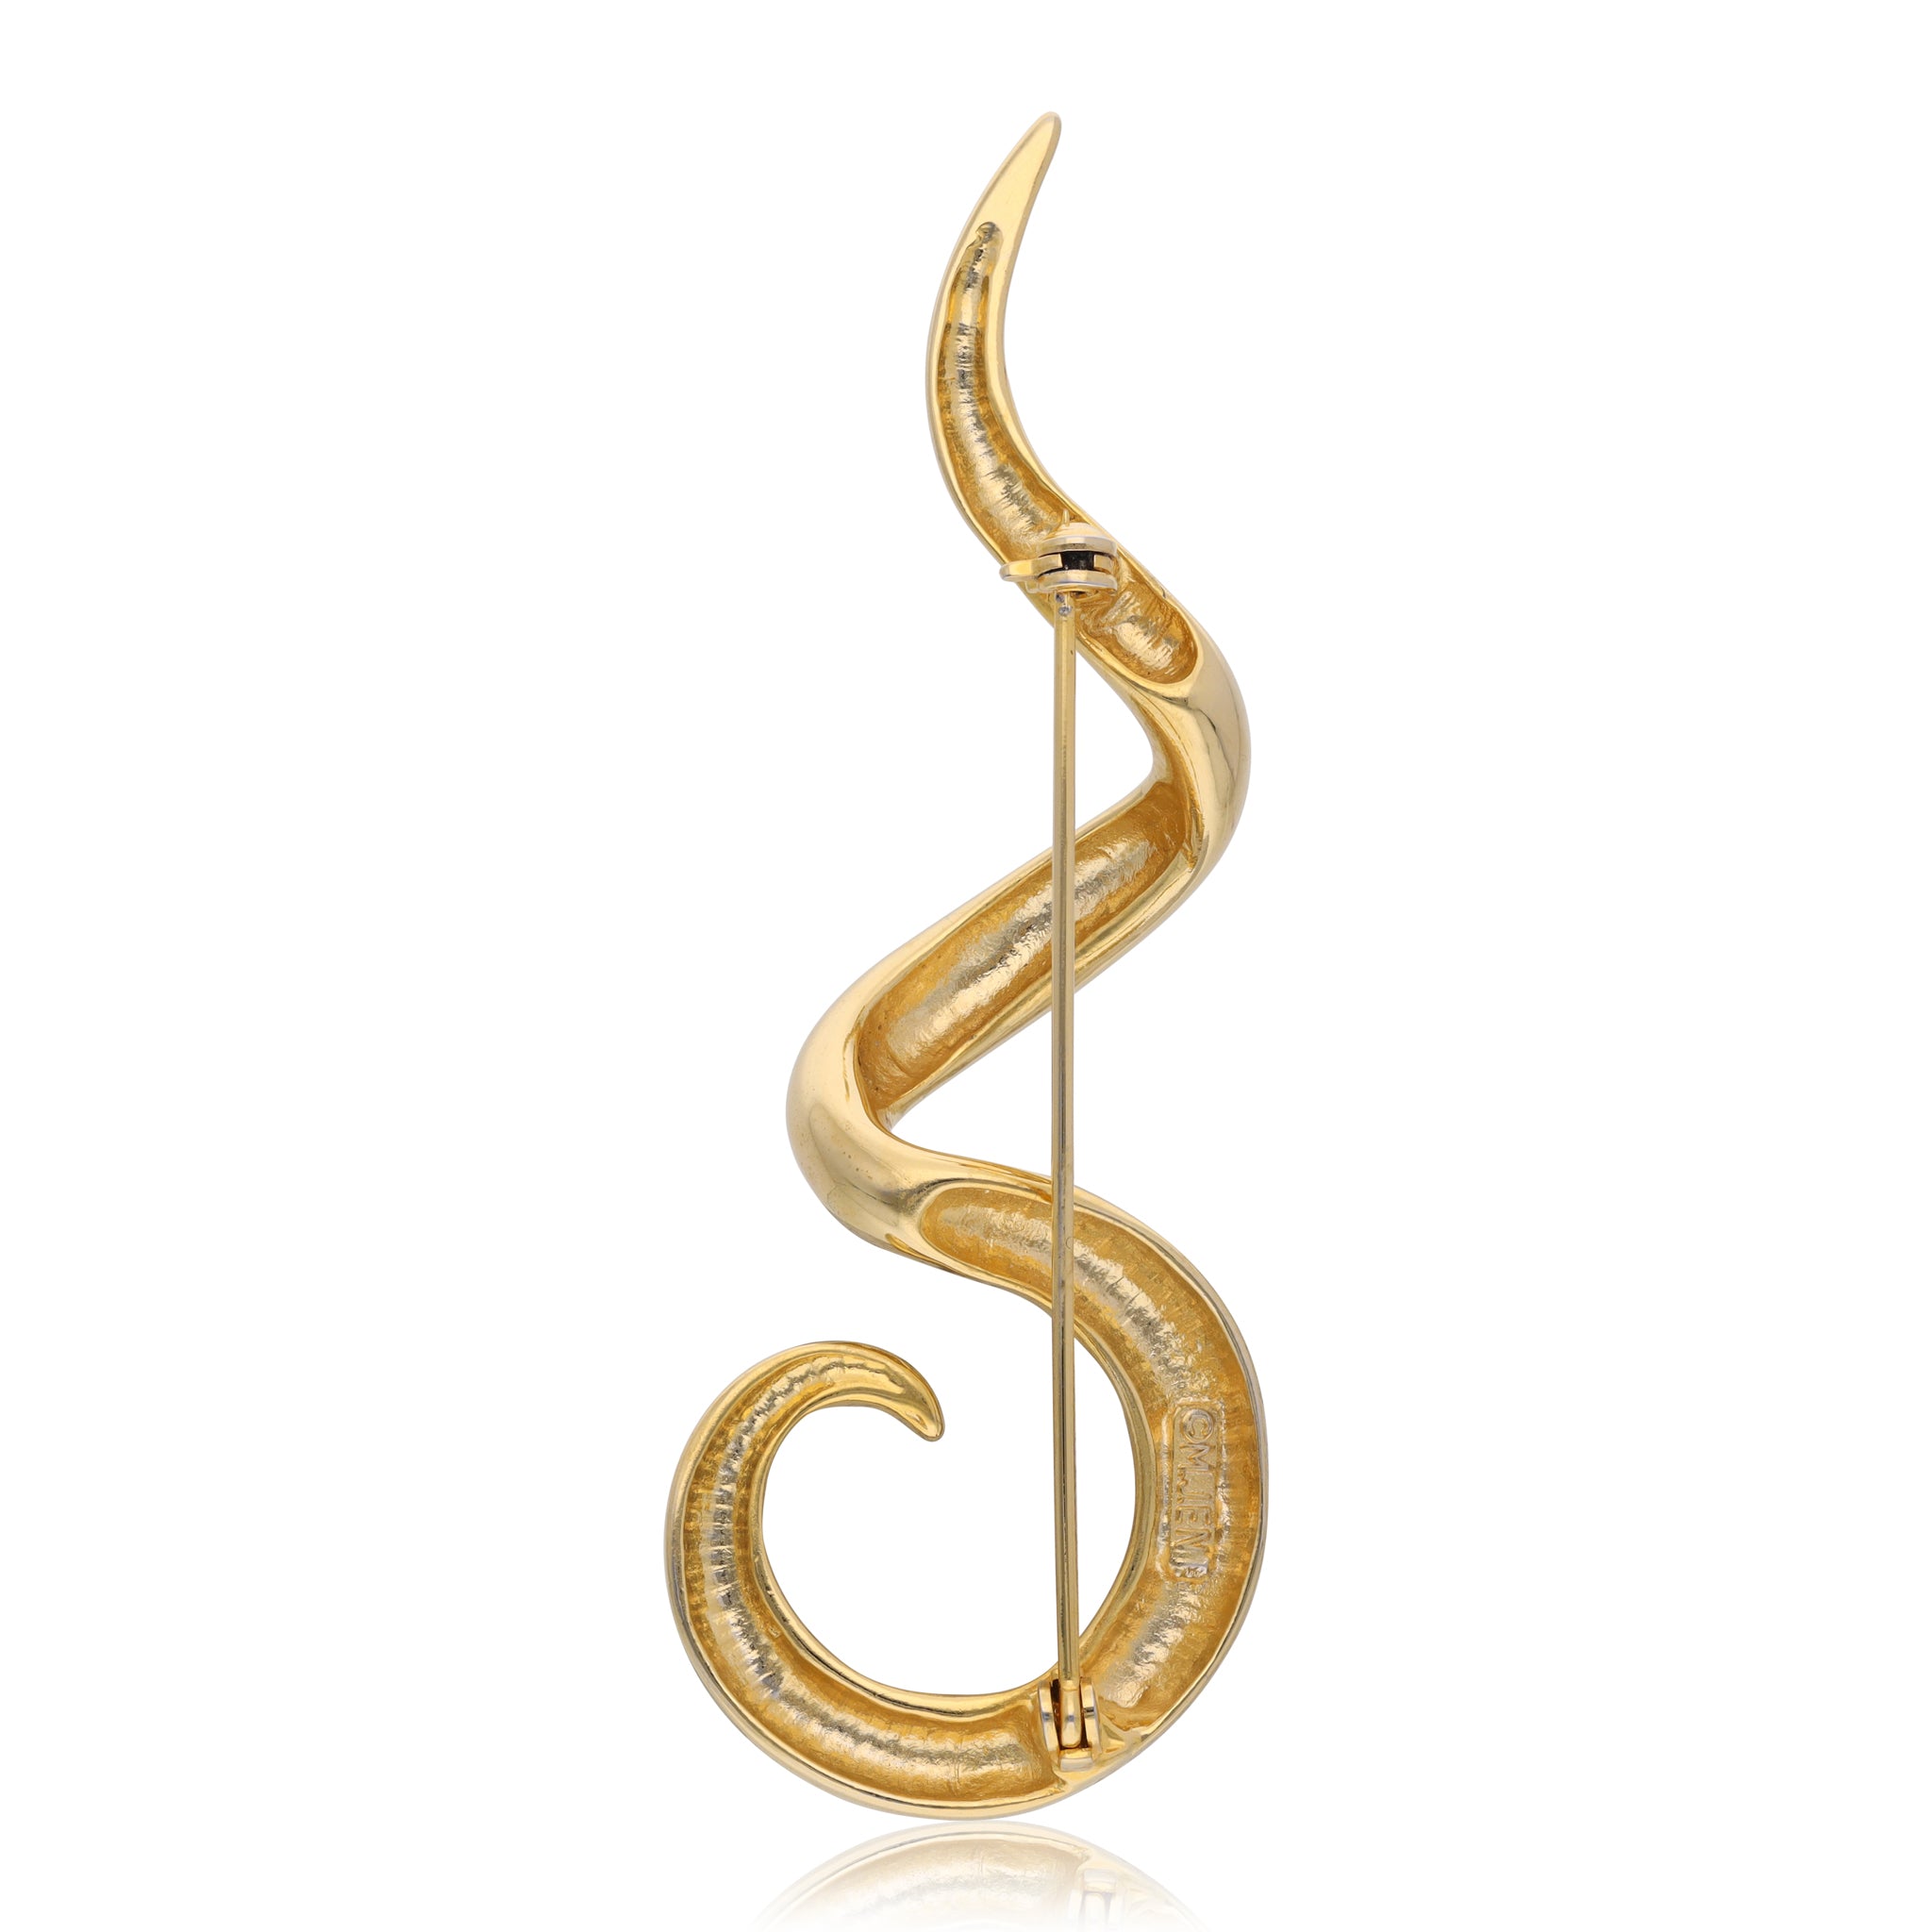 Vintage Serpent shape Brooch signed M. Jent